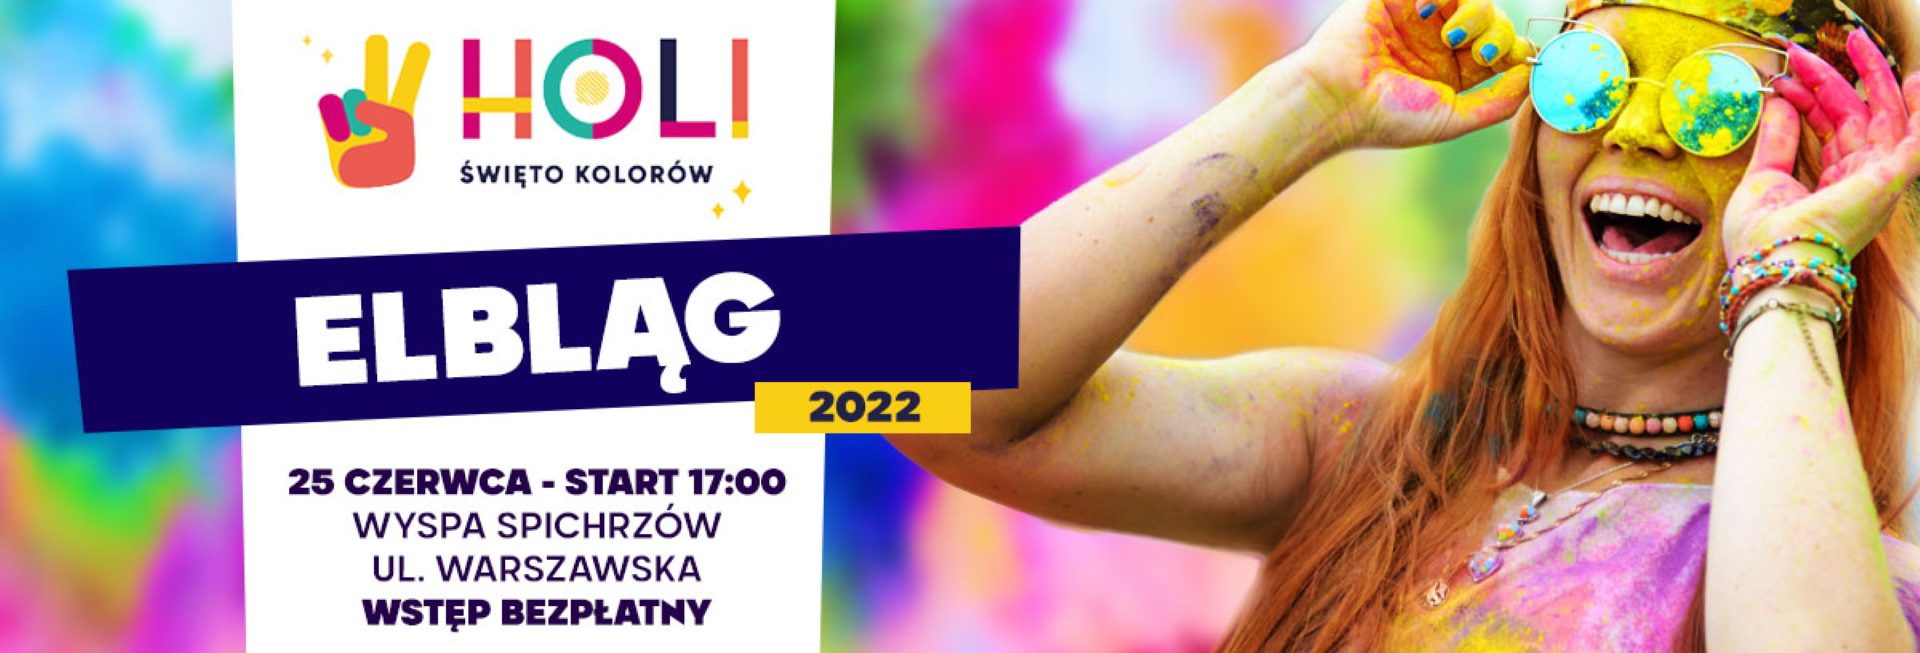 Plakat zapraszający do Elbląga na Holi Święto Kolorów Elbląg 2022.